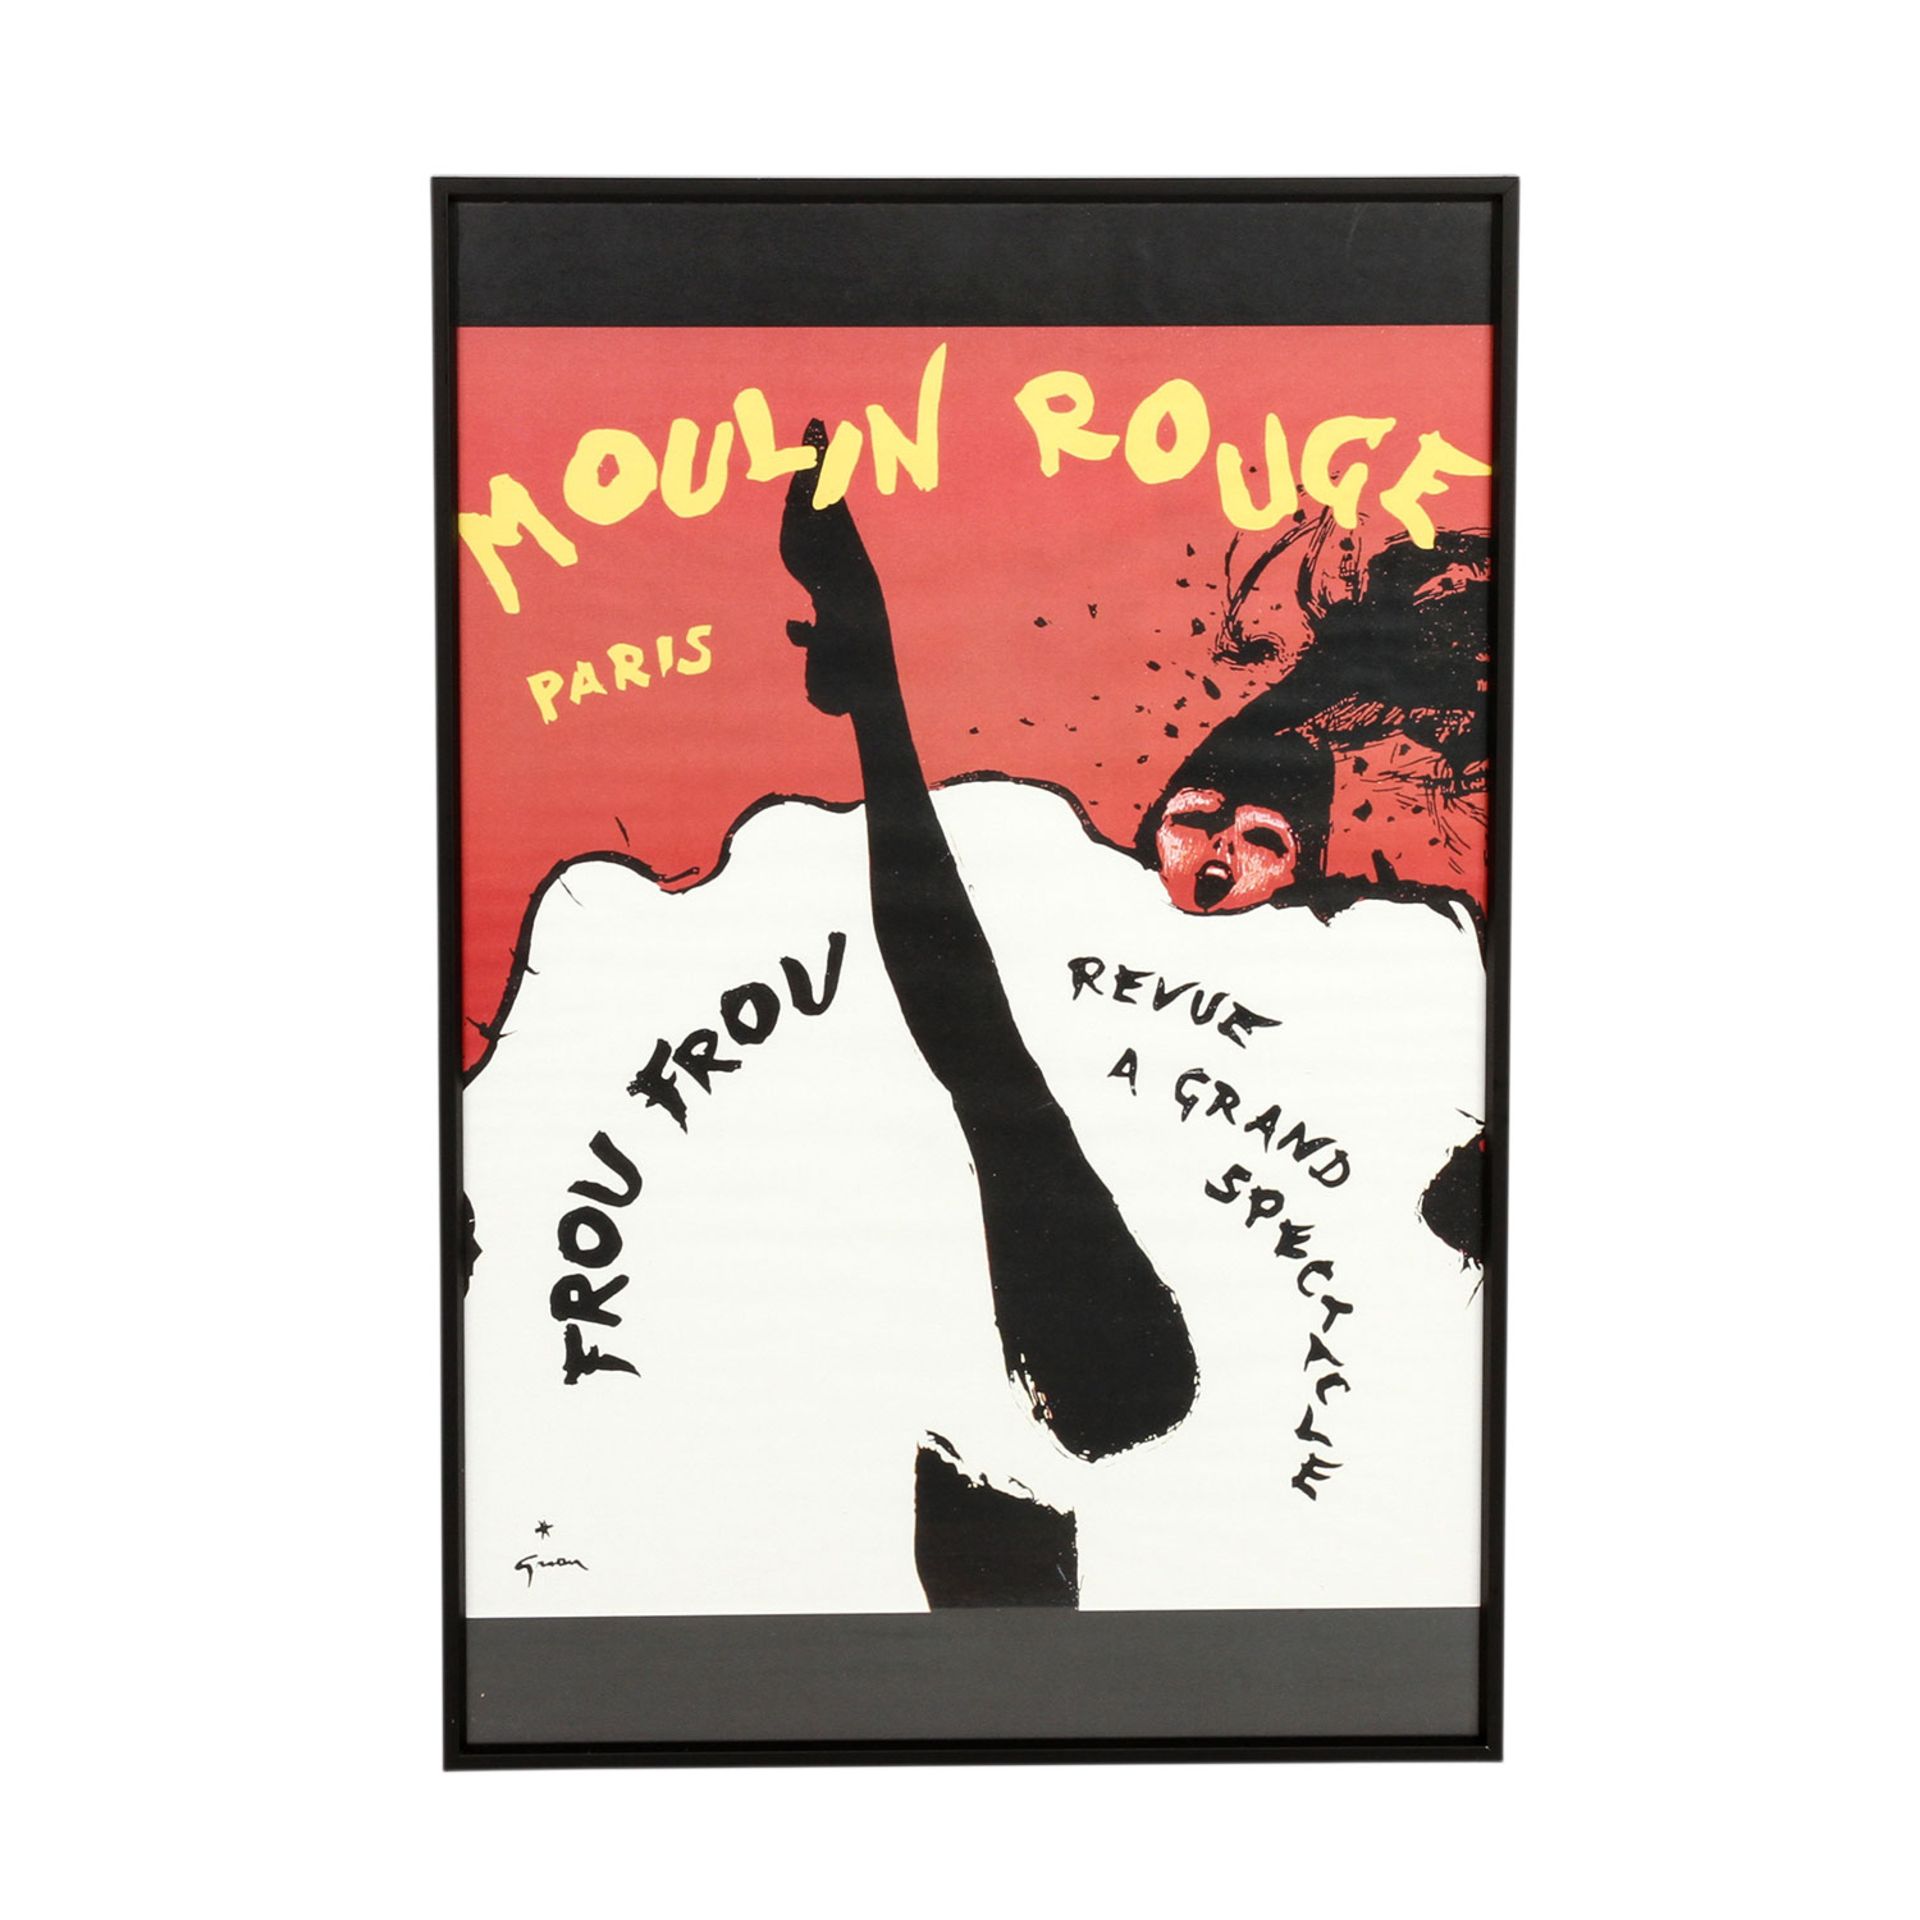 Plakat zur Show "FROU FROU Revue a grand Spectacle", Moulin Rouge, Paris 1960er Jahre,Entwurf René - Image 2 of 3